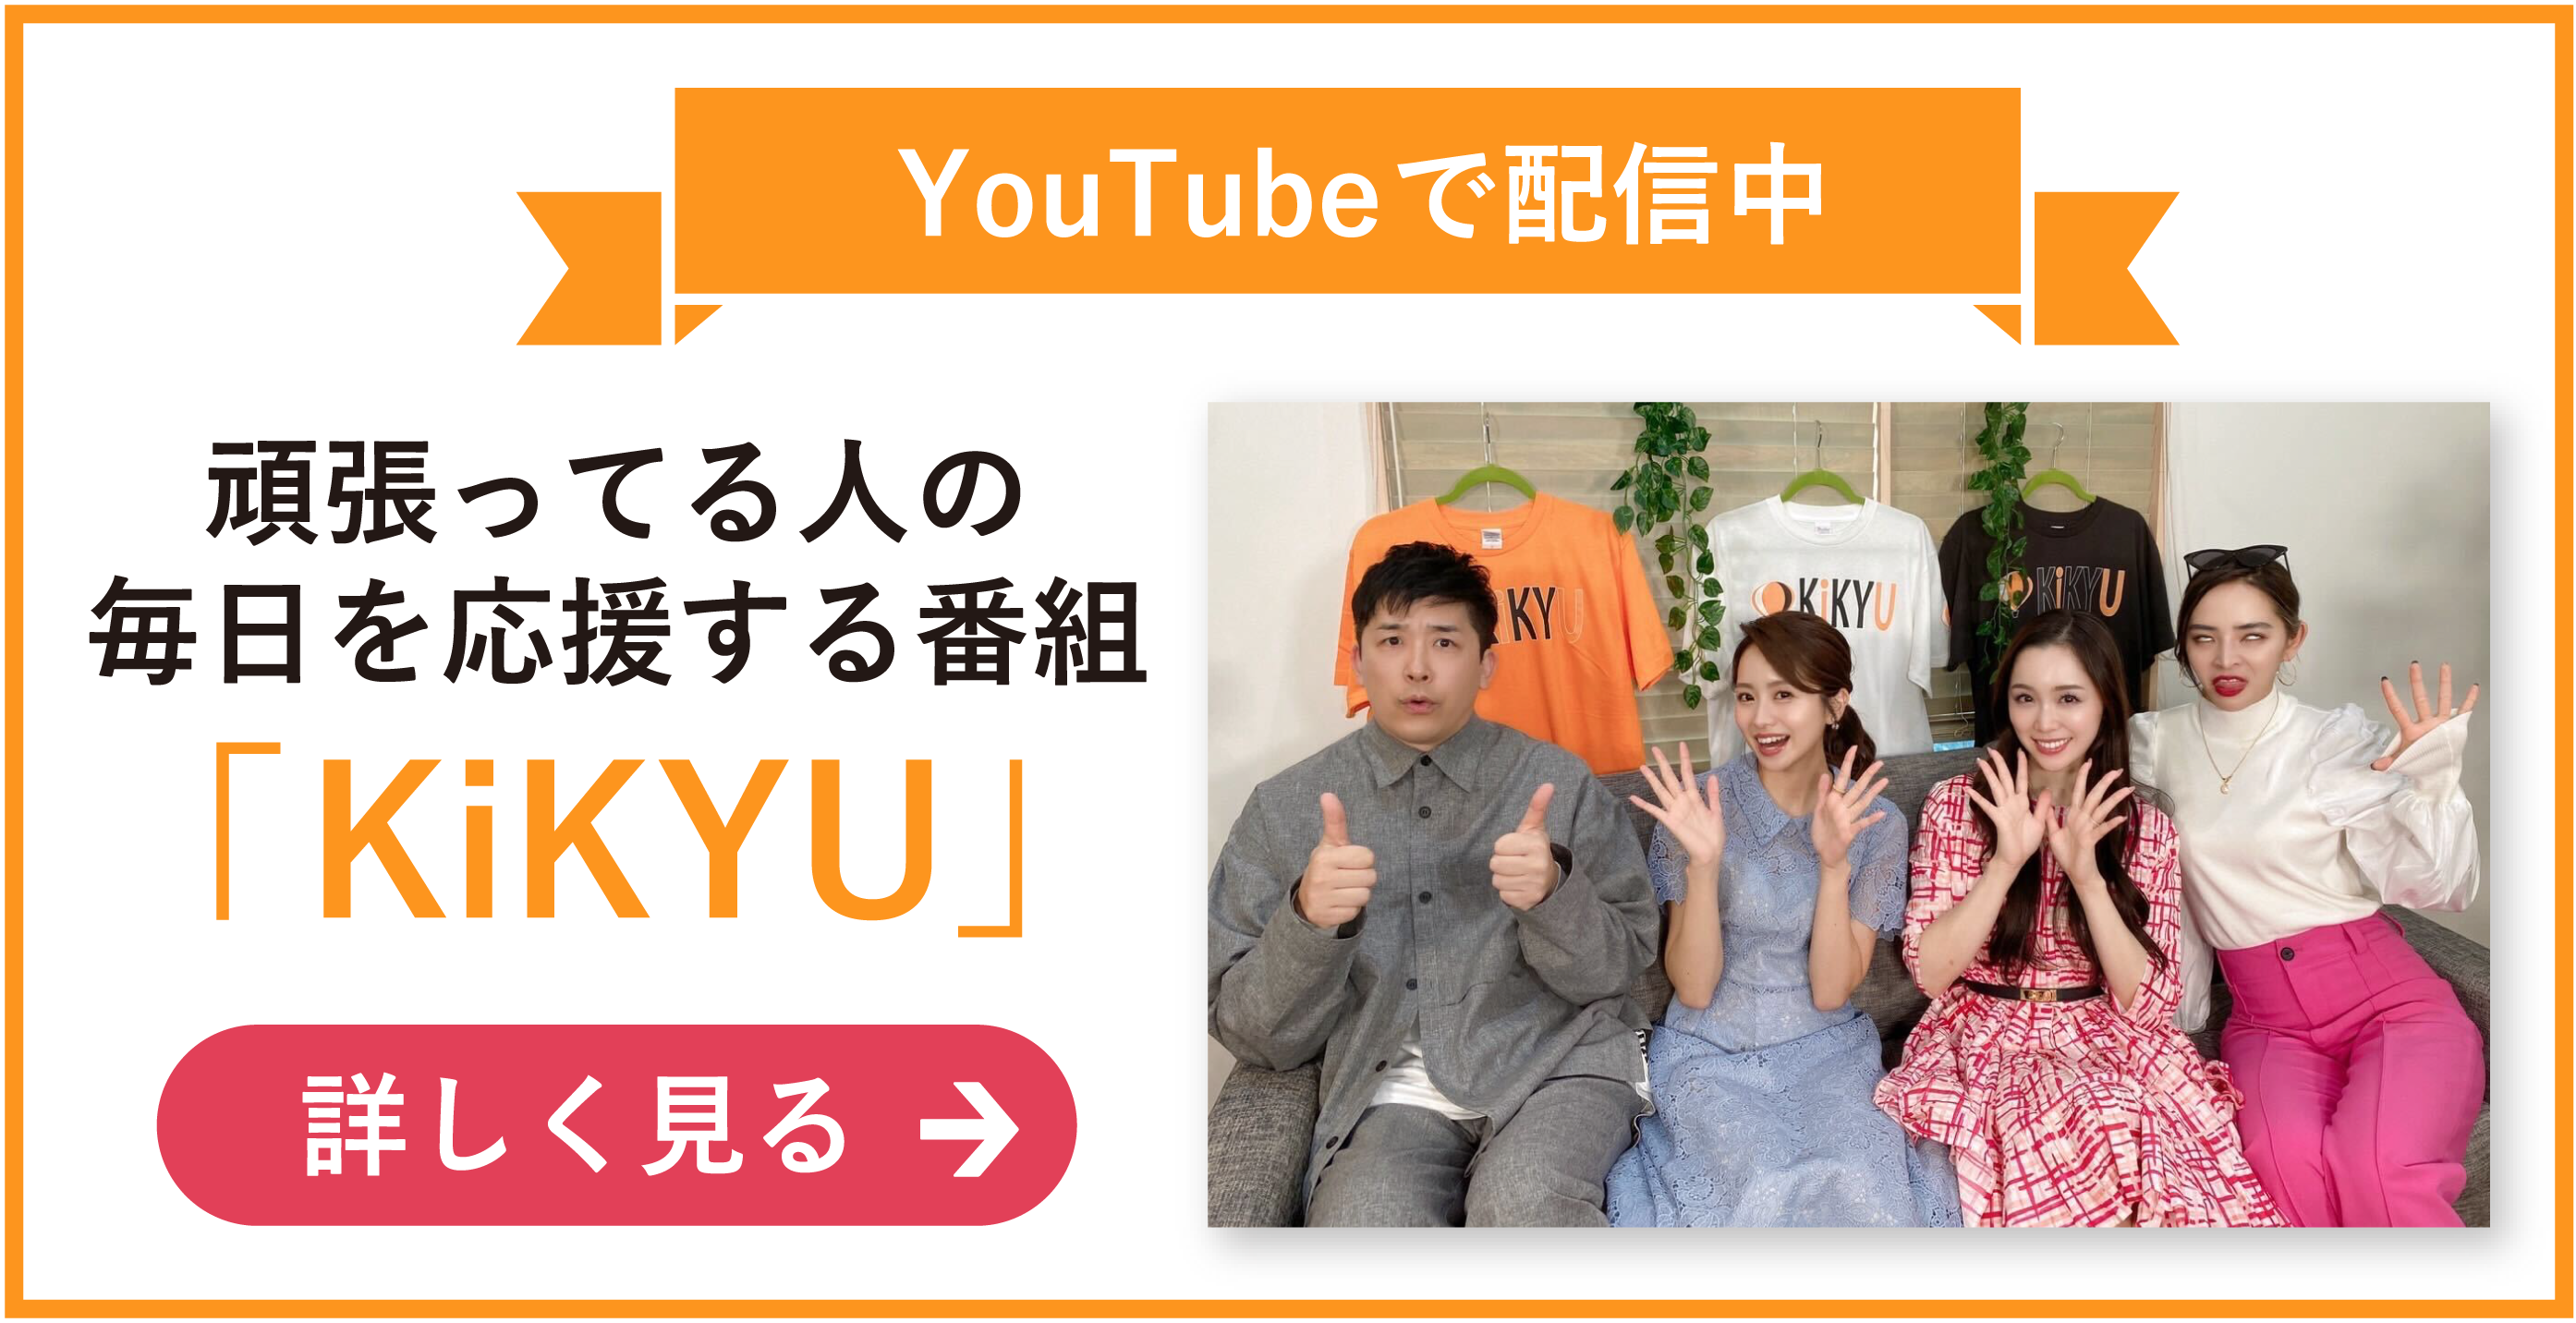 新しいタブでYouTube「KiKYU」公式サイトへ飛ぶ